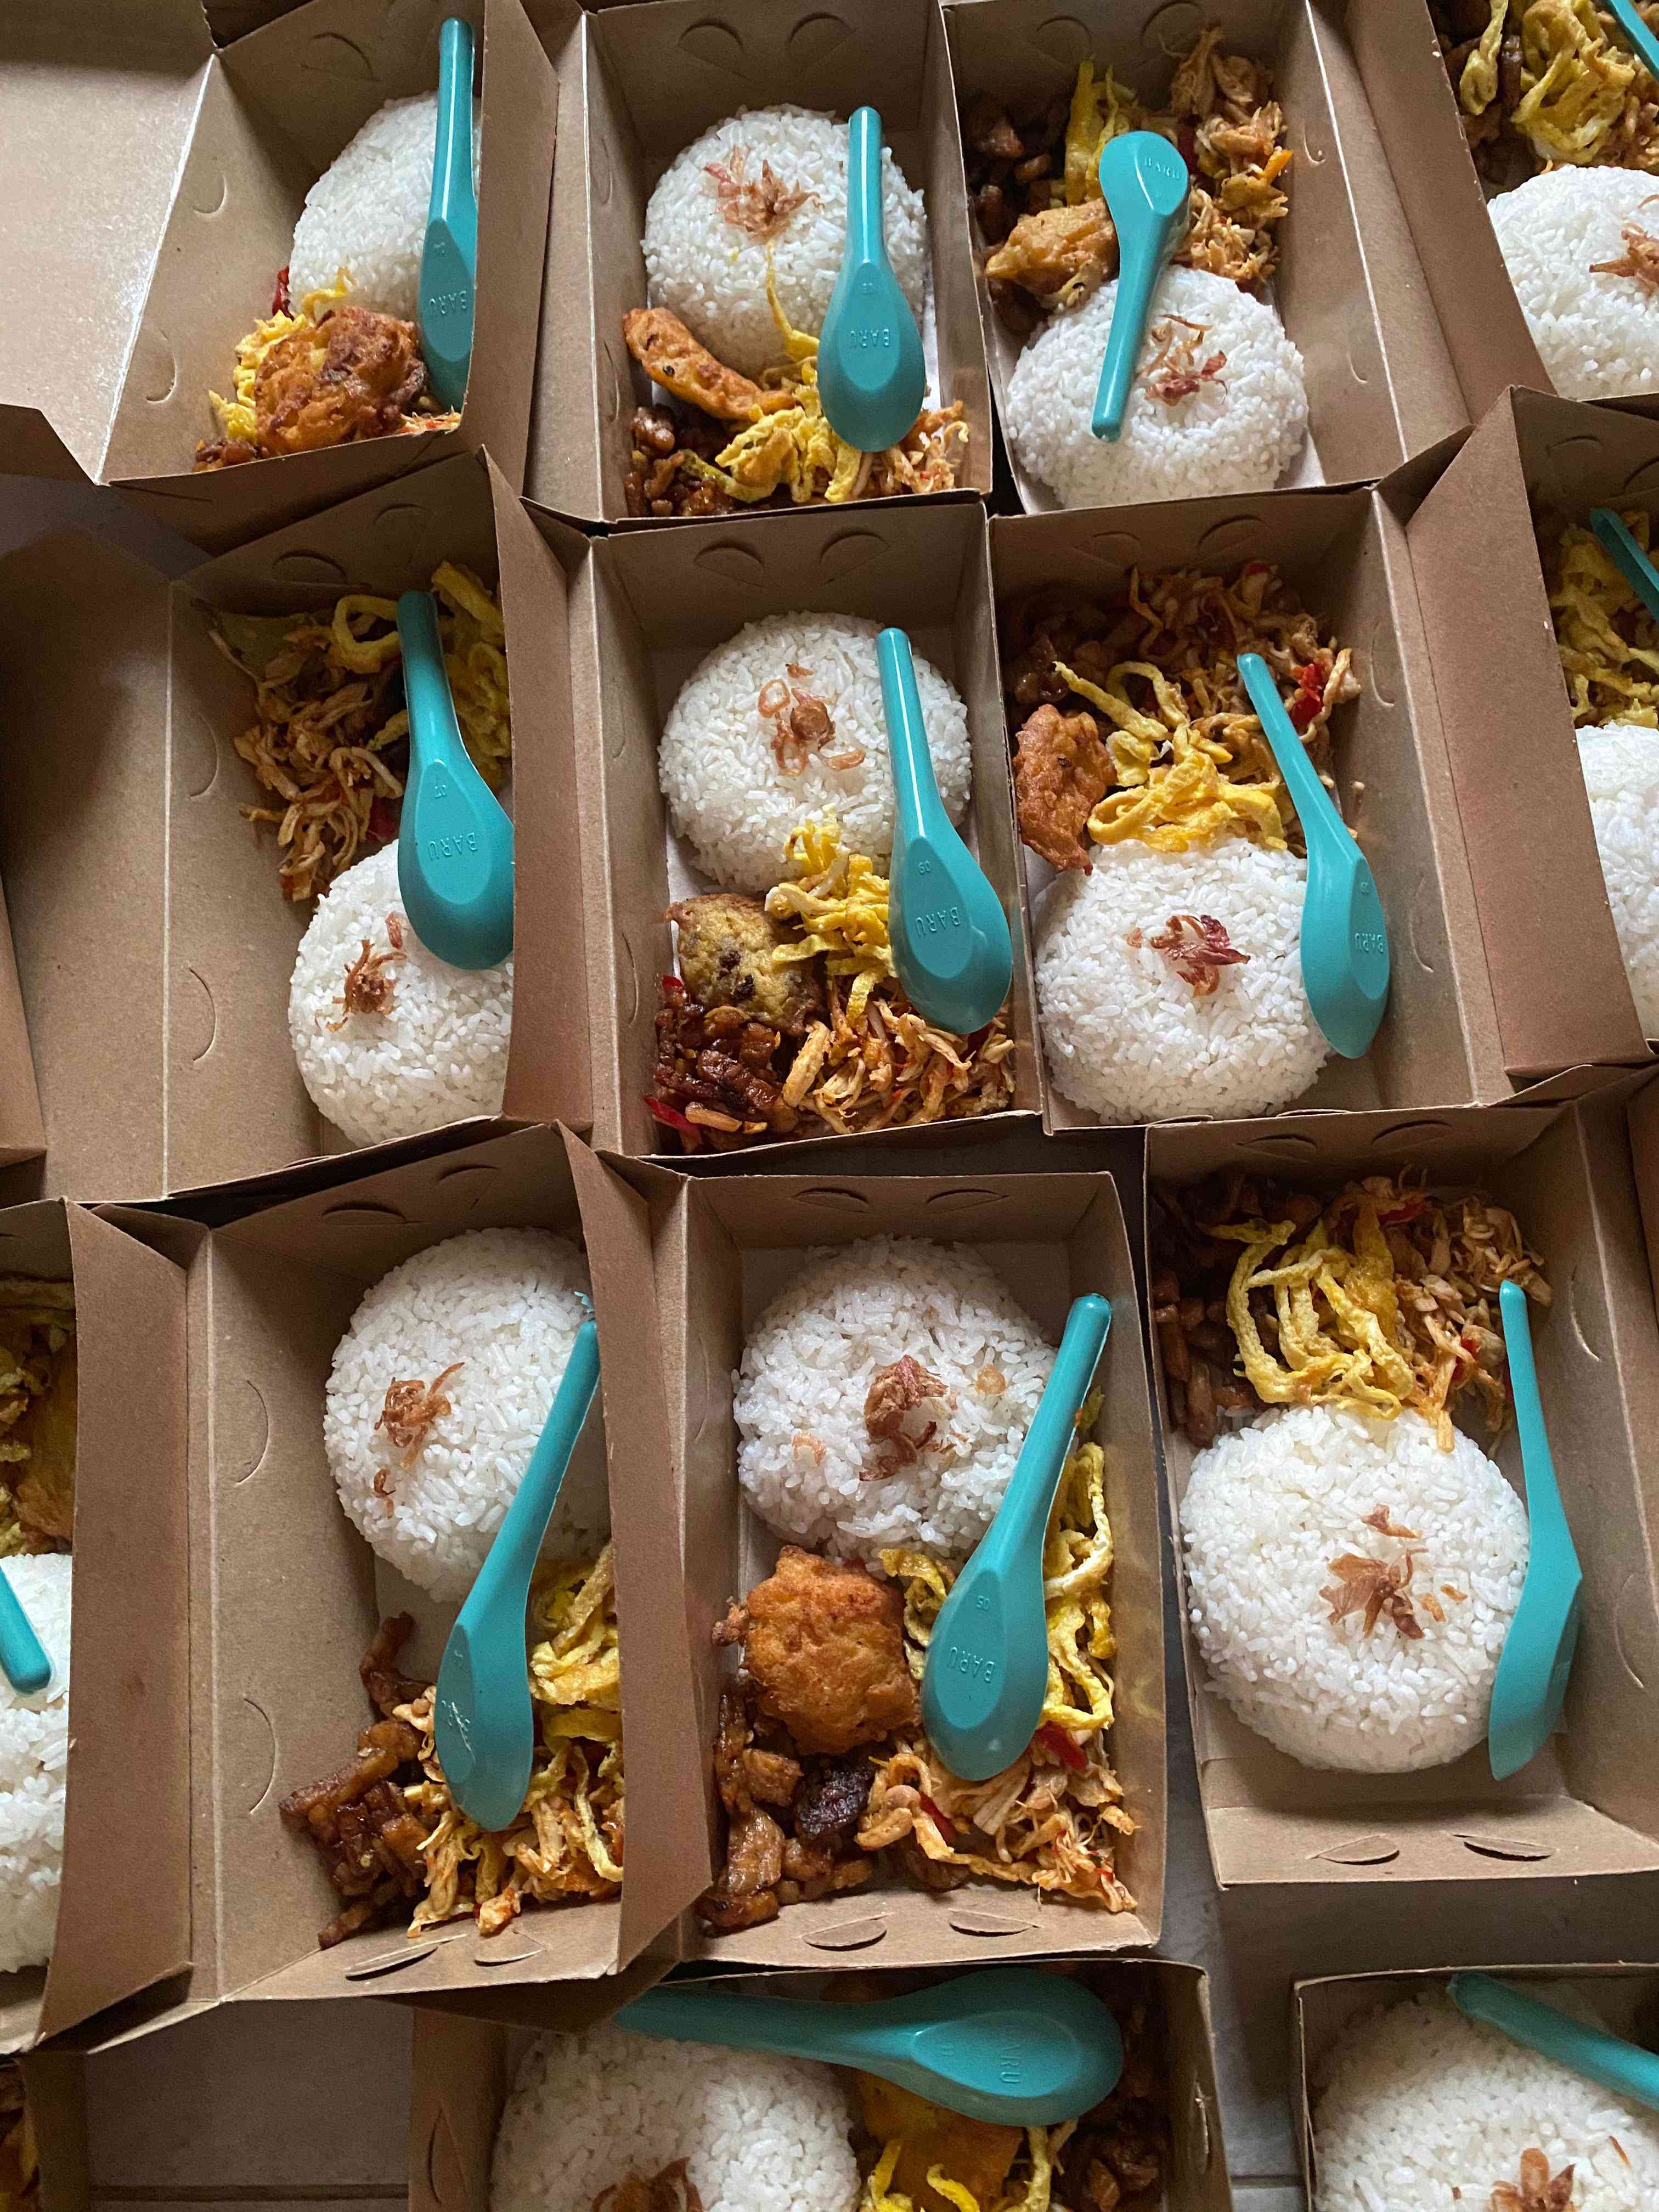 Kebaikan dalam Aksi: Mahasiswa UIN Walisongo Semarang Berbagi Makanan untuk Berbuka Puasa